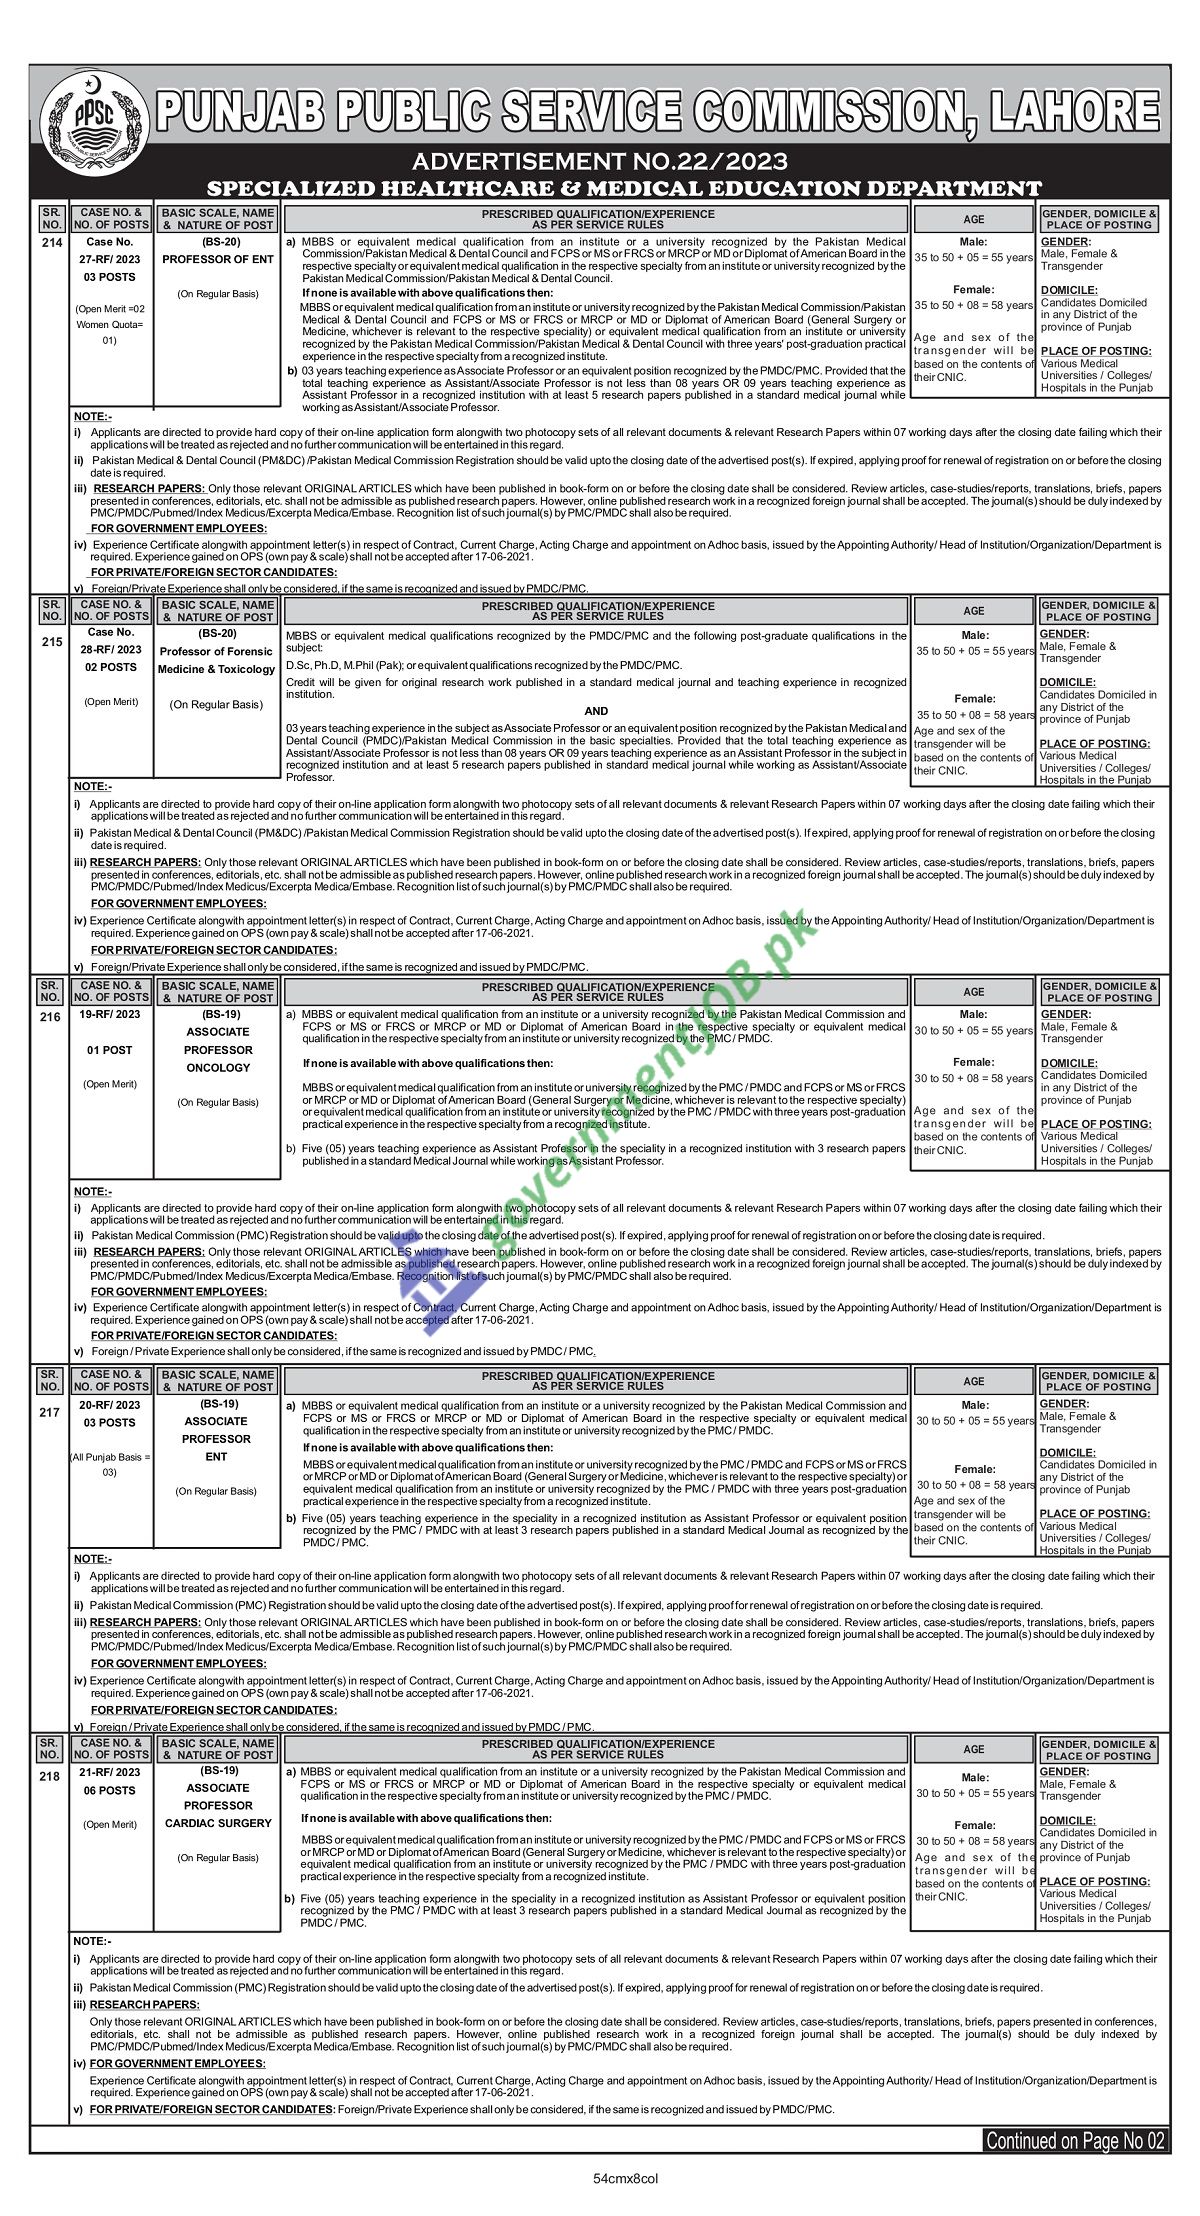 PPSC Job Advt No. 22/2023 - Punjab Public Service Commission Apply Online